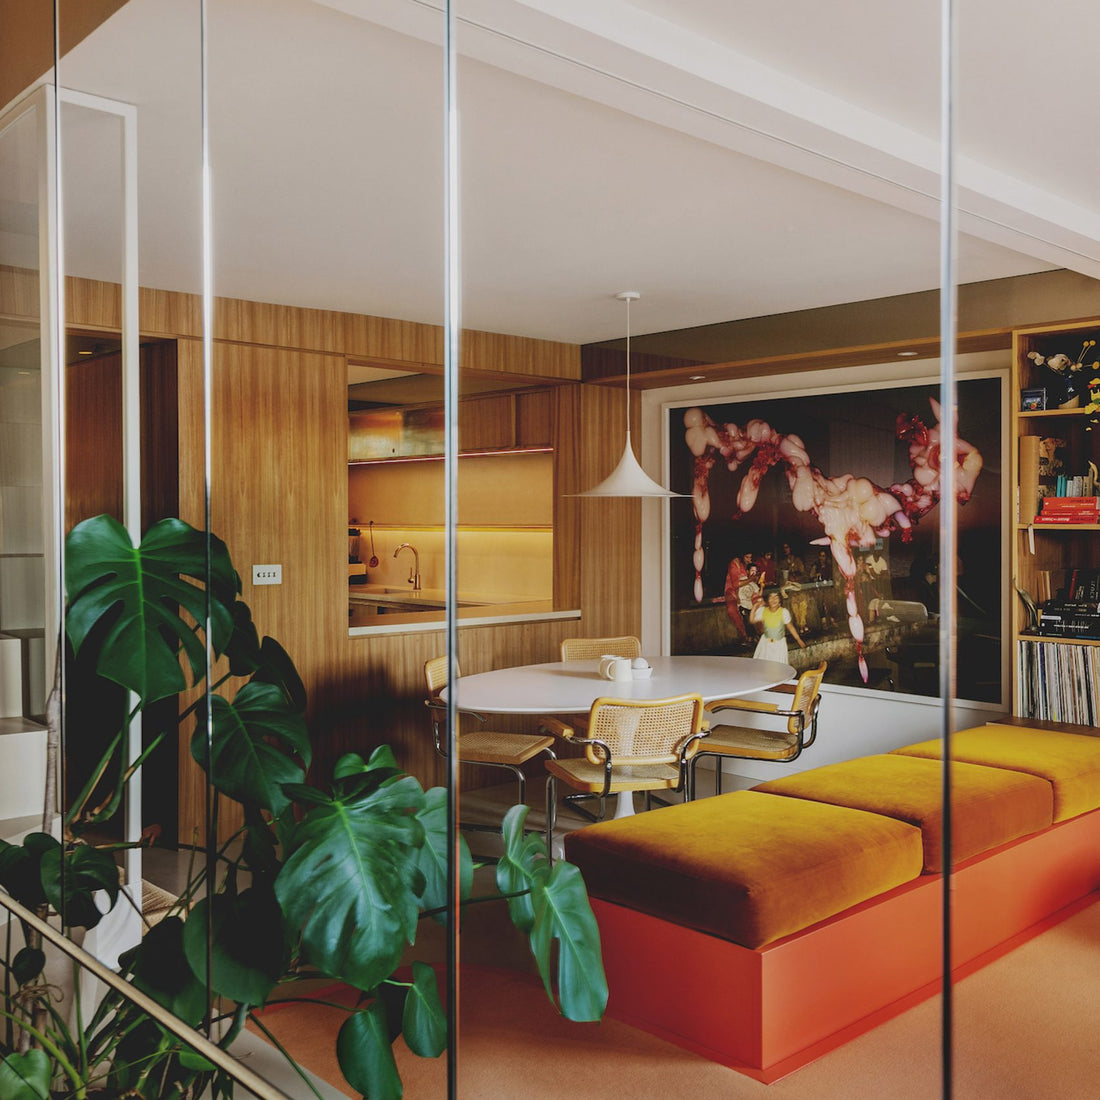 Dezeen’s top 10 home interiors of 2021